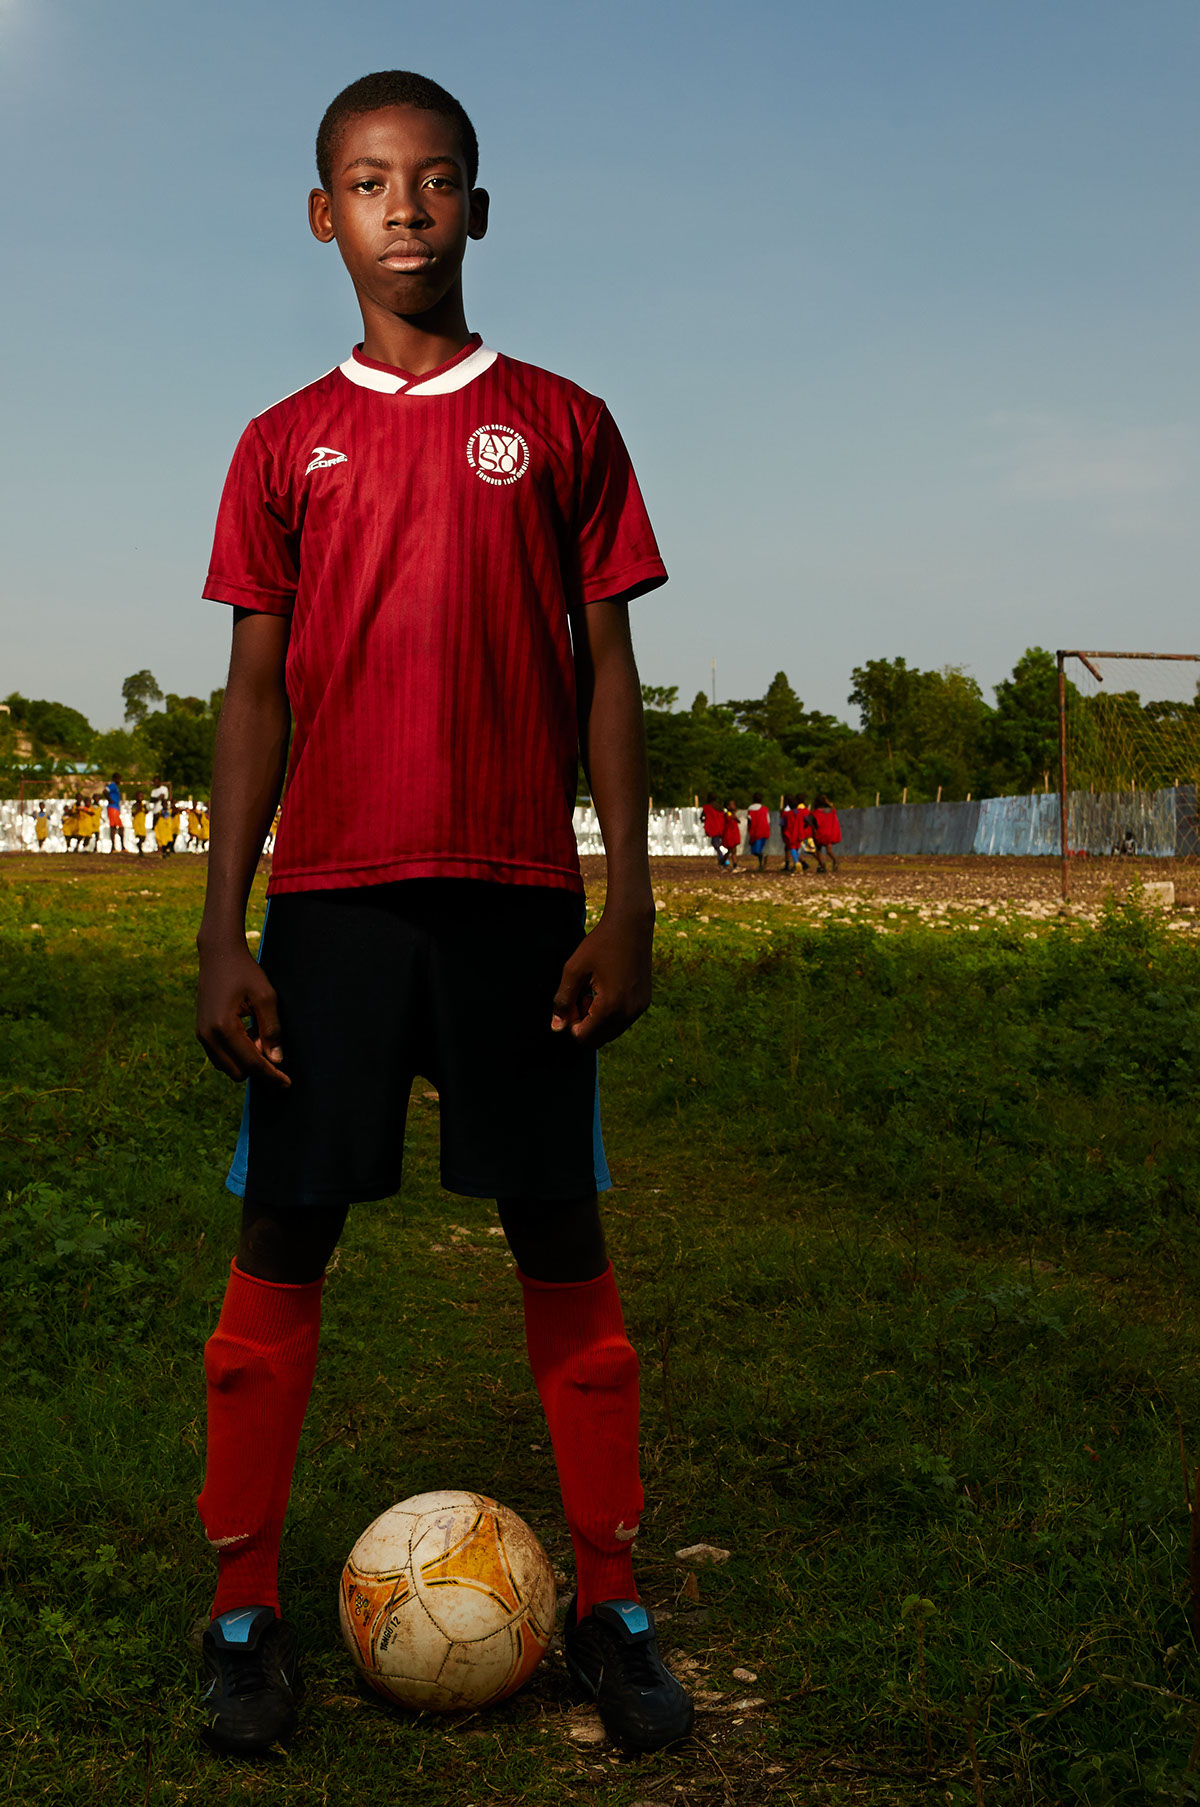 Haiti soccer jacmel portrait sports people portrait photography Haitian children